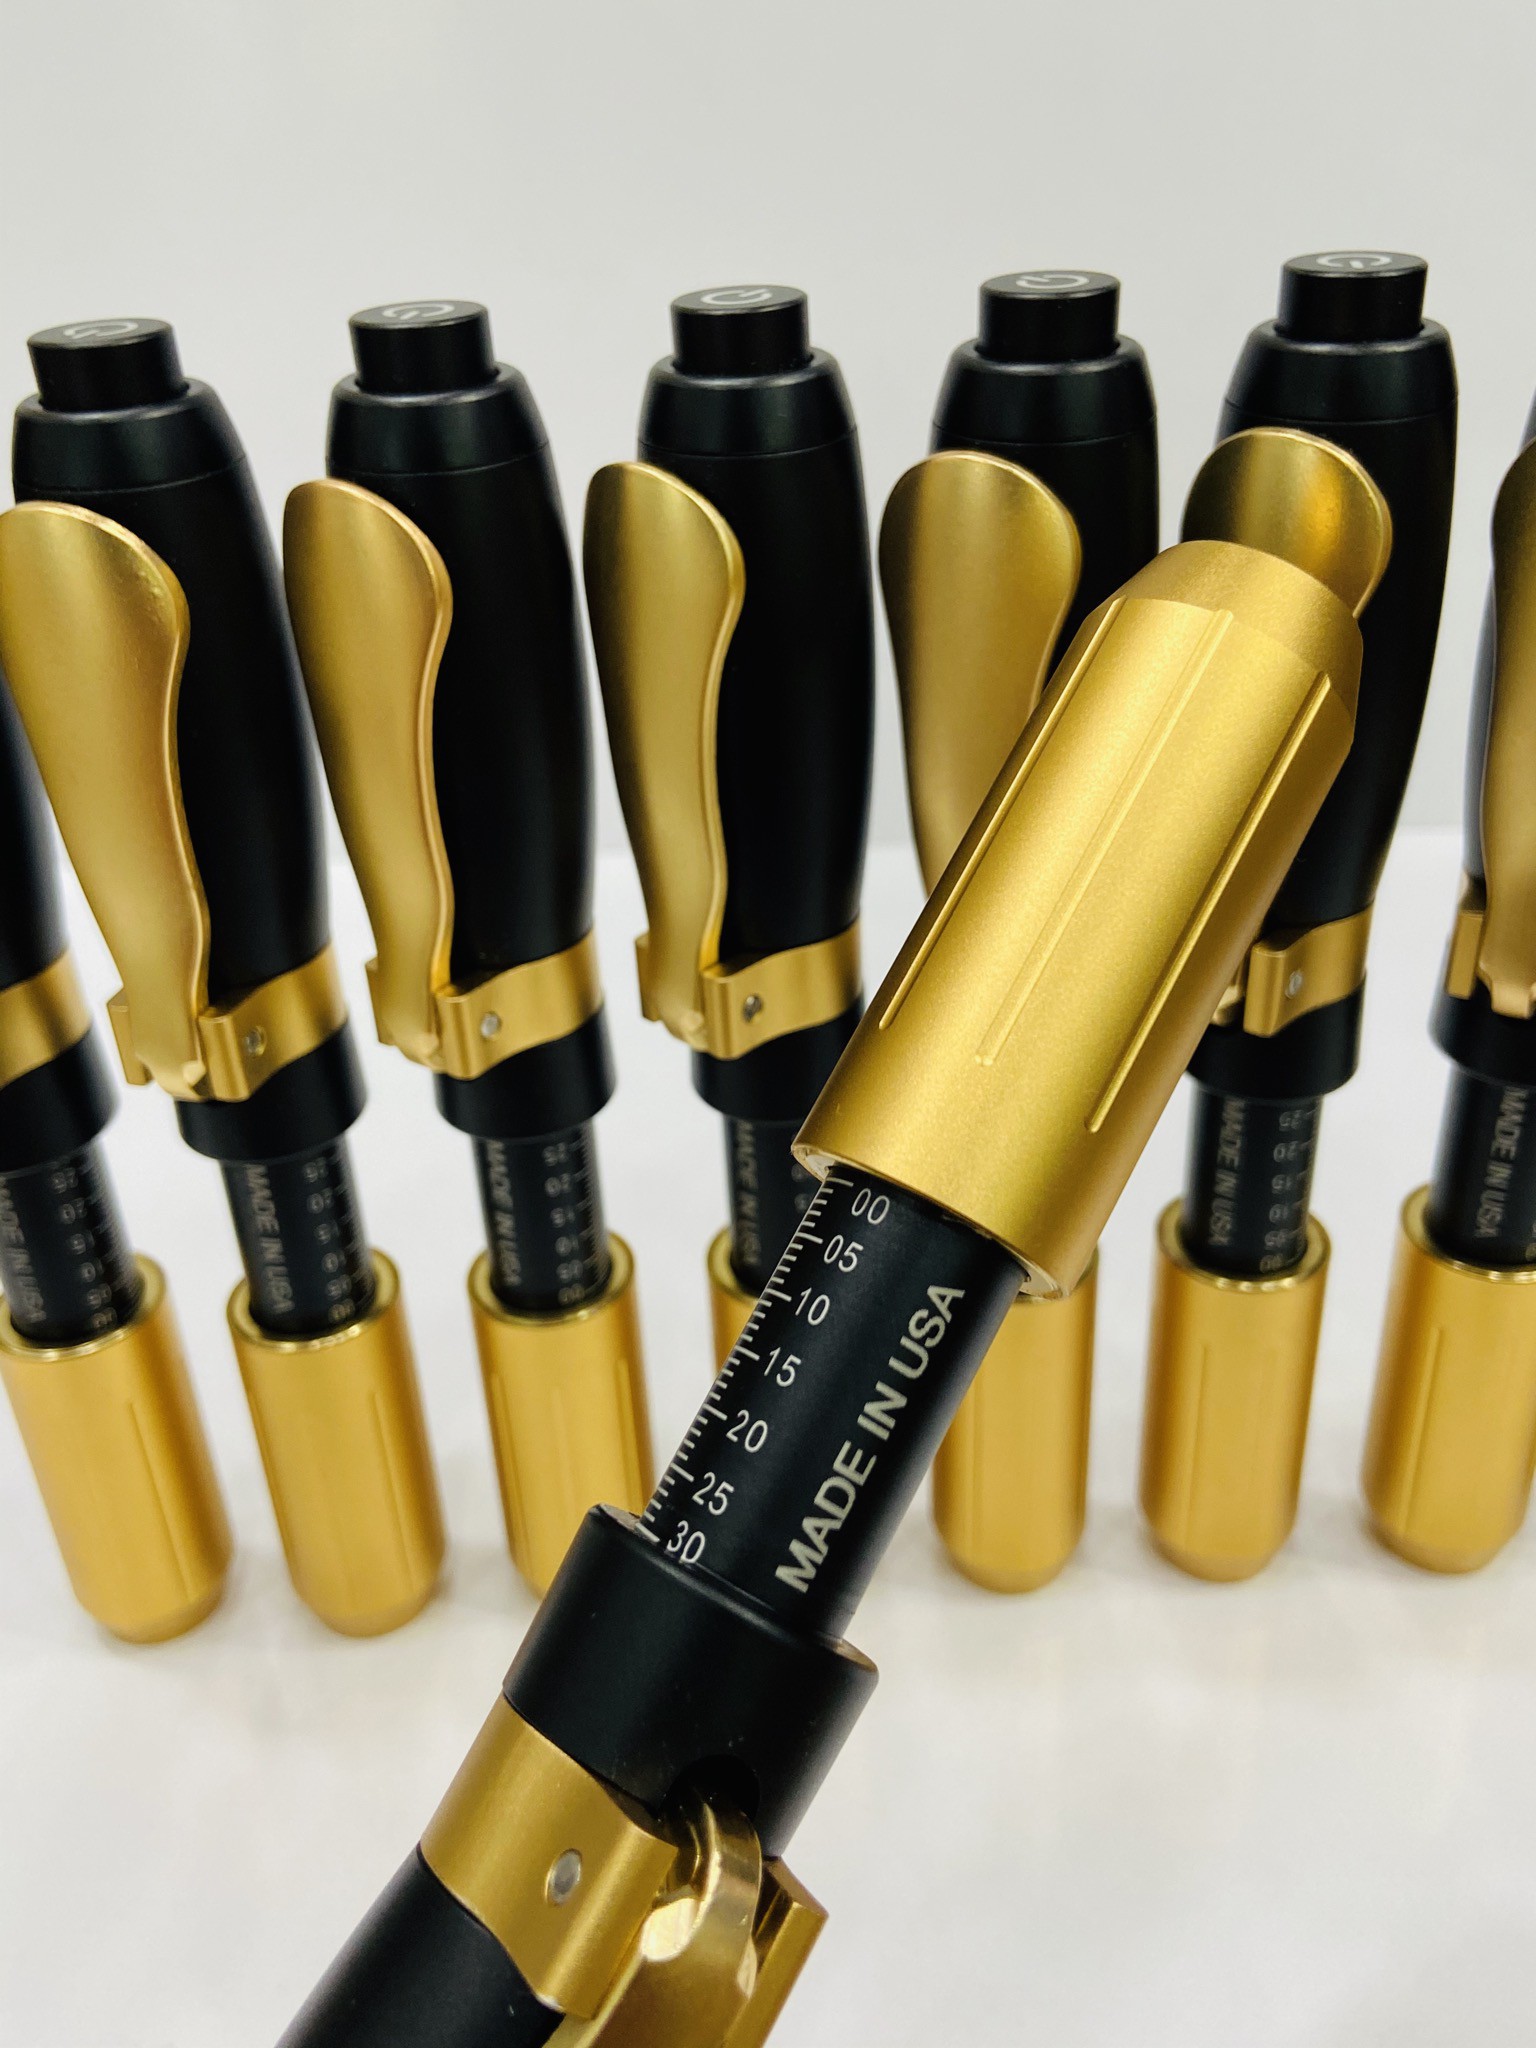 دستگاه هیالورون پن مشکی طلای اصل امریکا Hyaluron pen made in usa